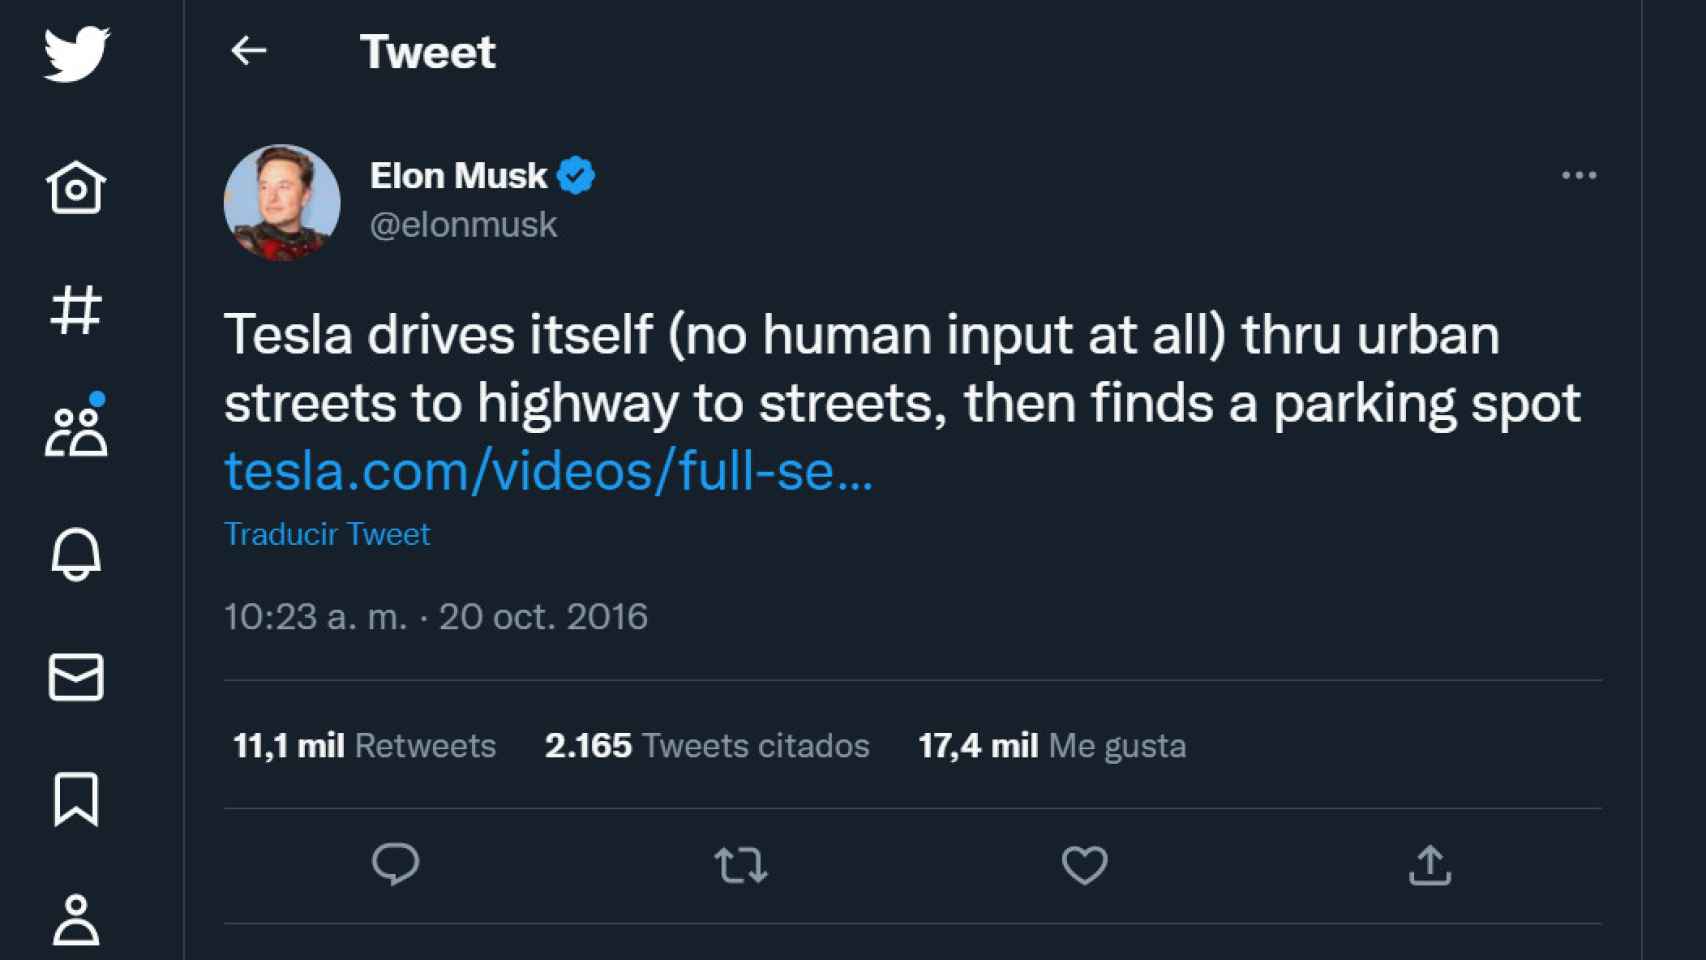 Tuit de Elon Musk compartiendo el vídeo de Tesla